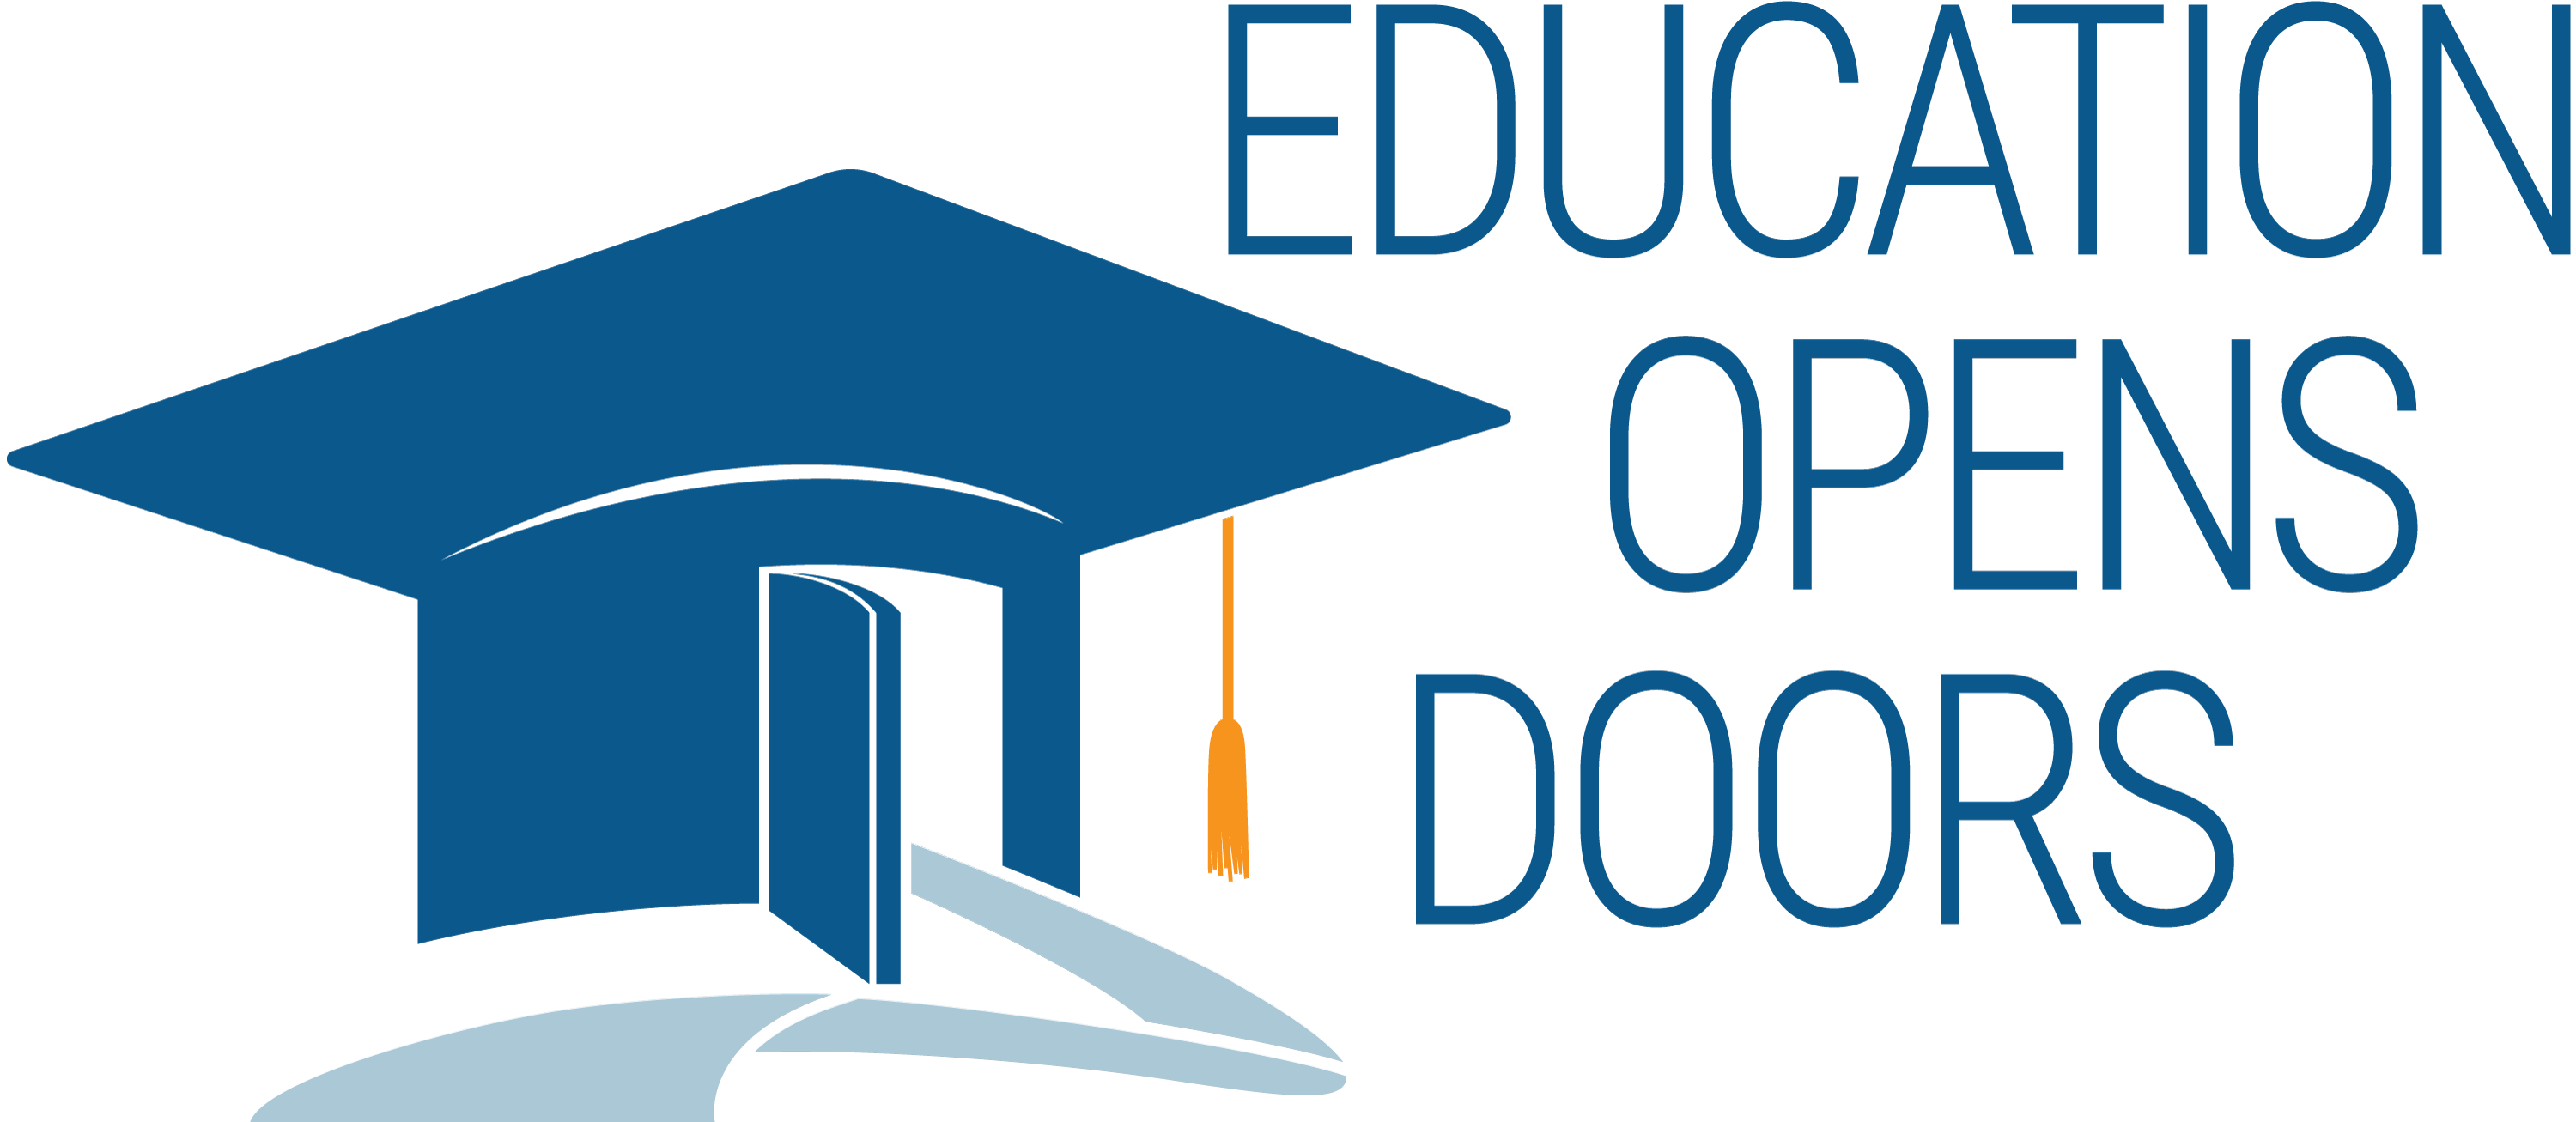 Education Opens Doors